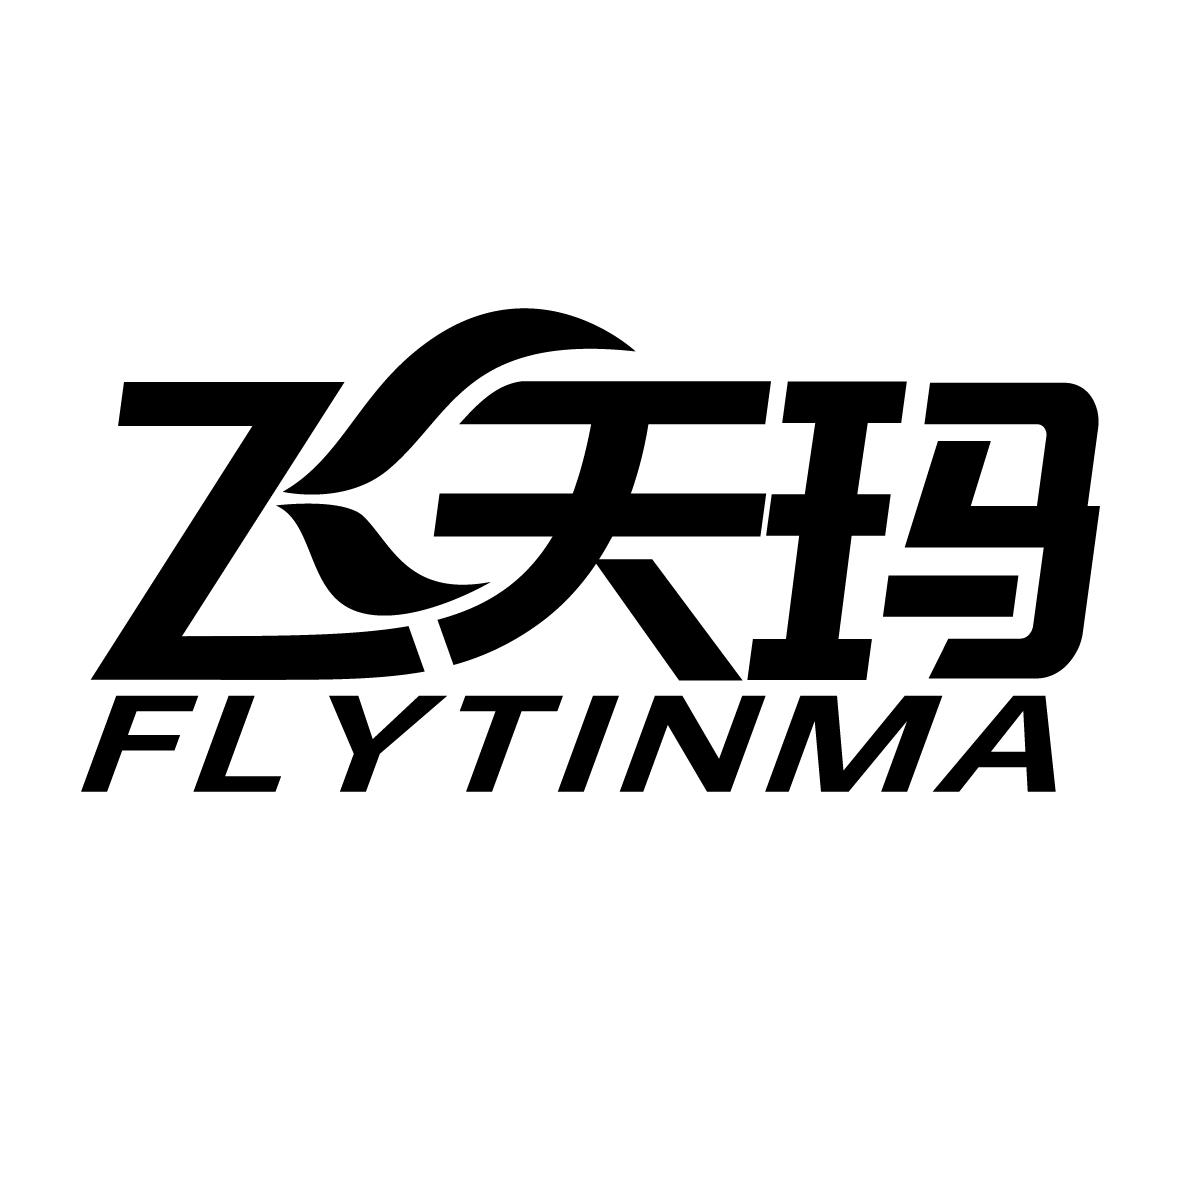 12类-运输装置飞天玛 FLYTINMA商标转让